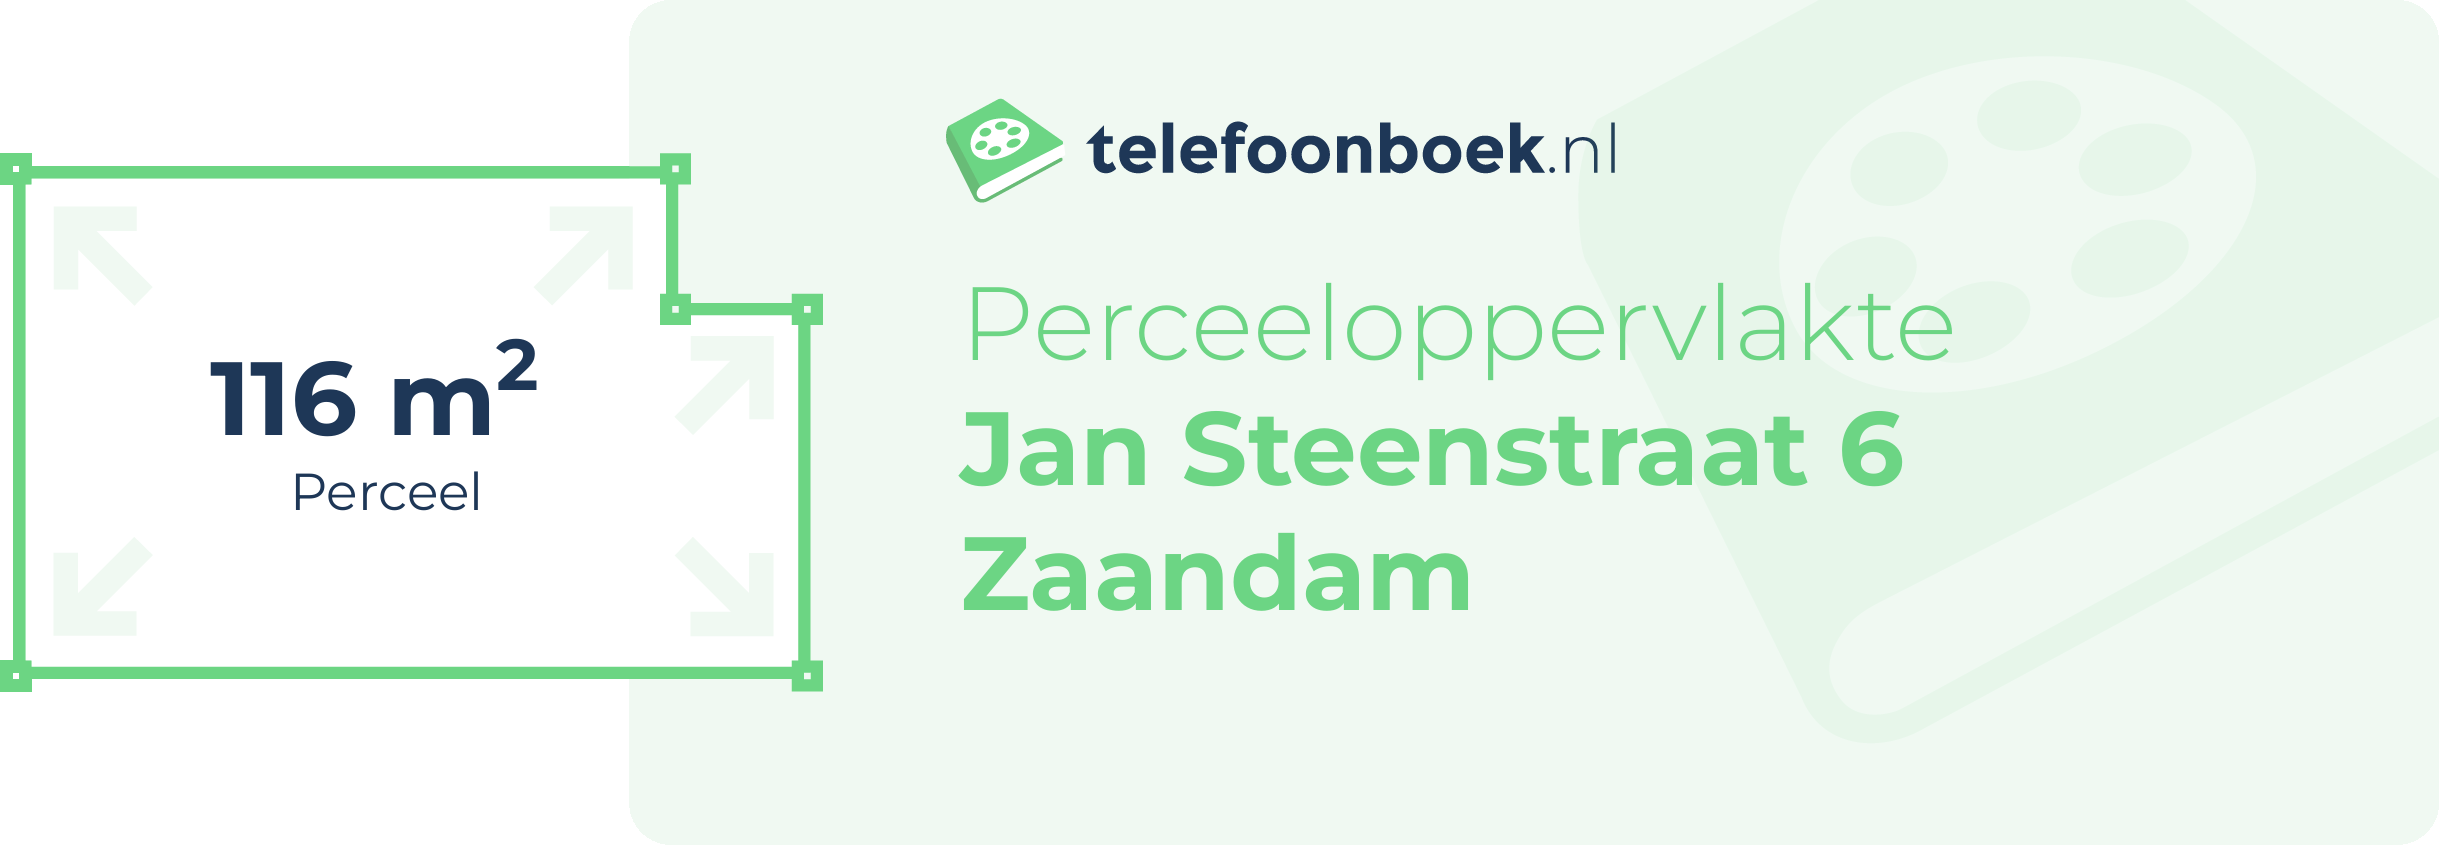 Perceeloppervlakte Jan Steenstraat 6 Zaandam